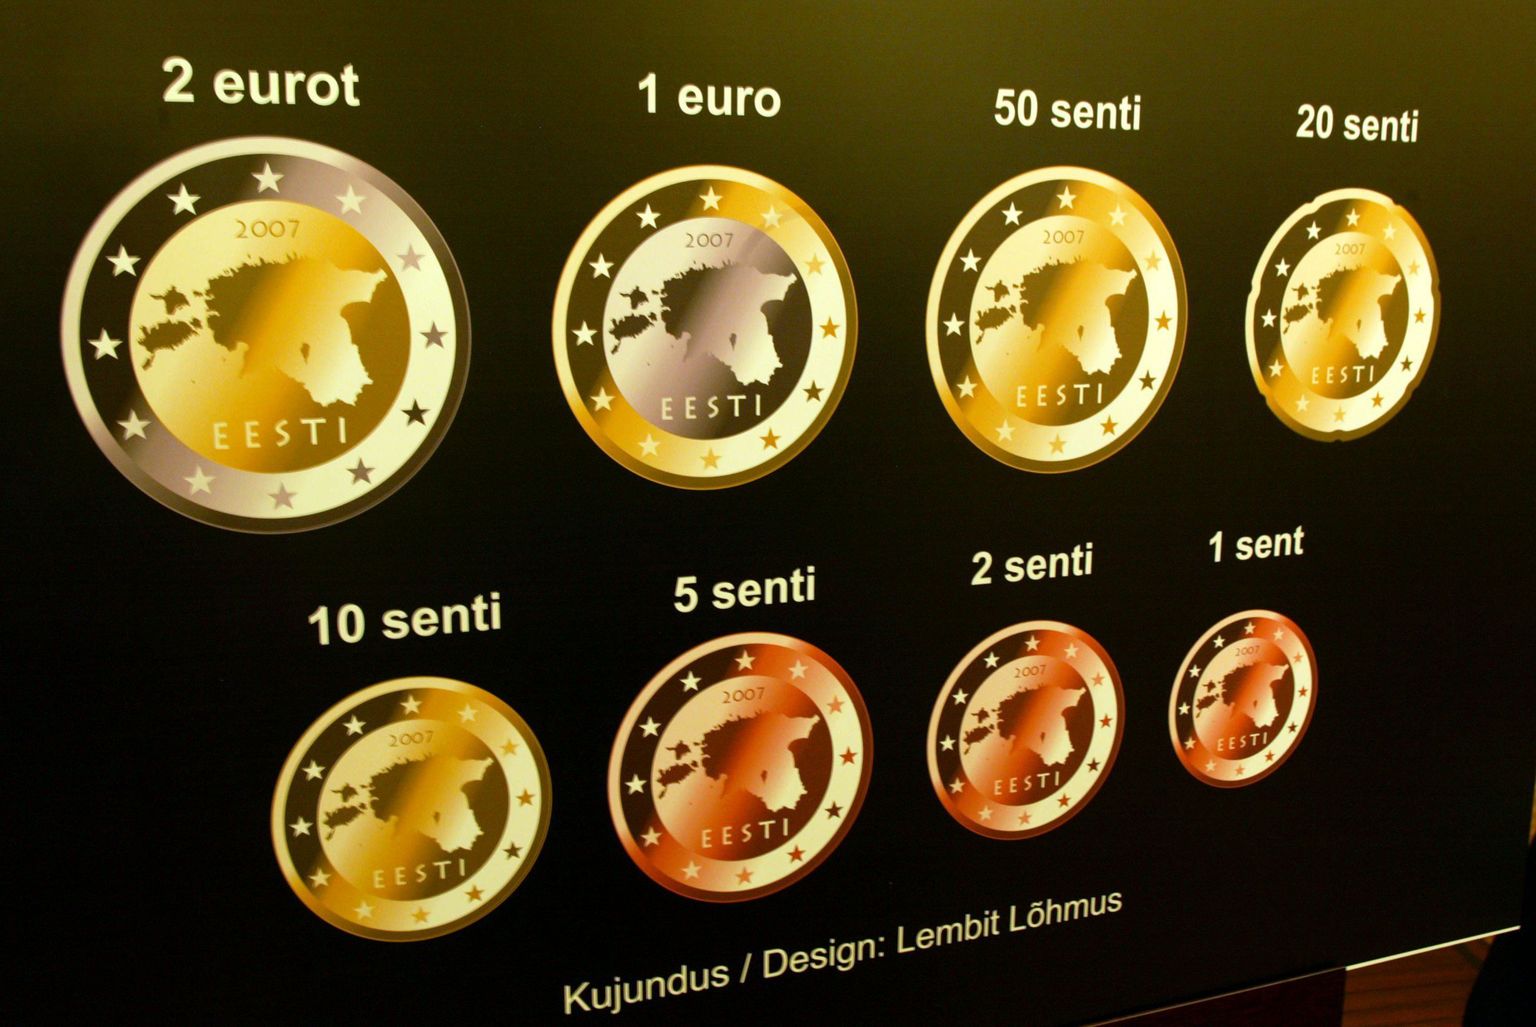 Eesti euromündi rahvusliku külje on kujundanud Lembit Lõhmus.